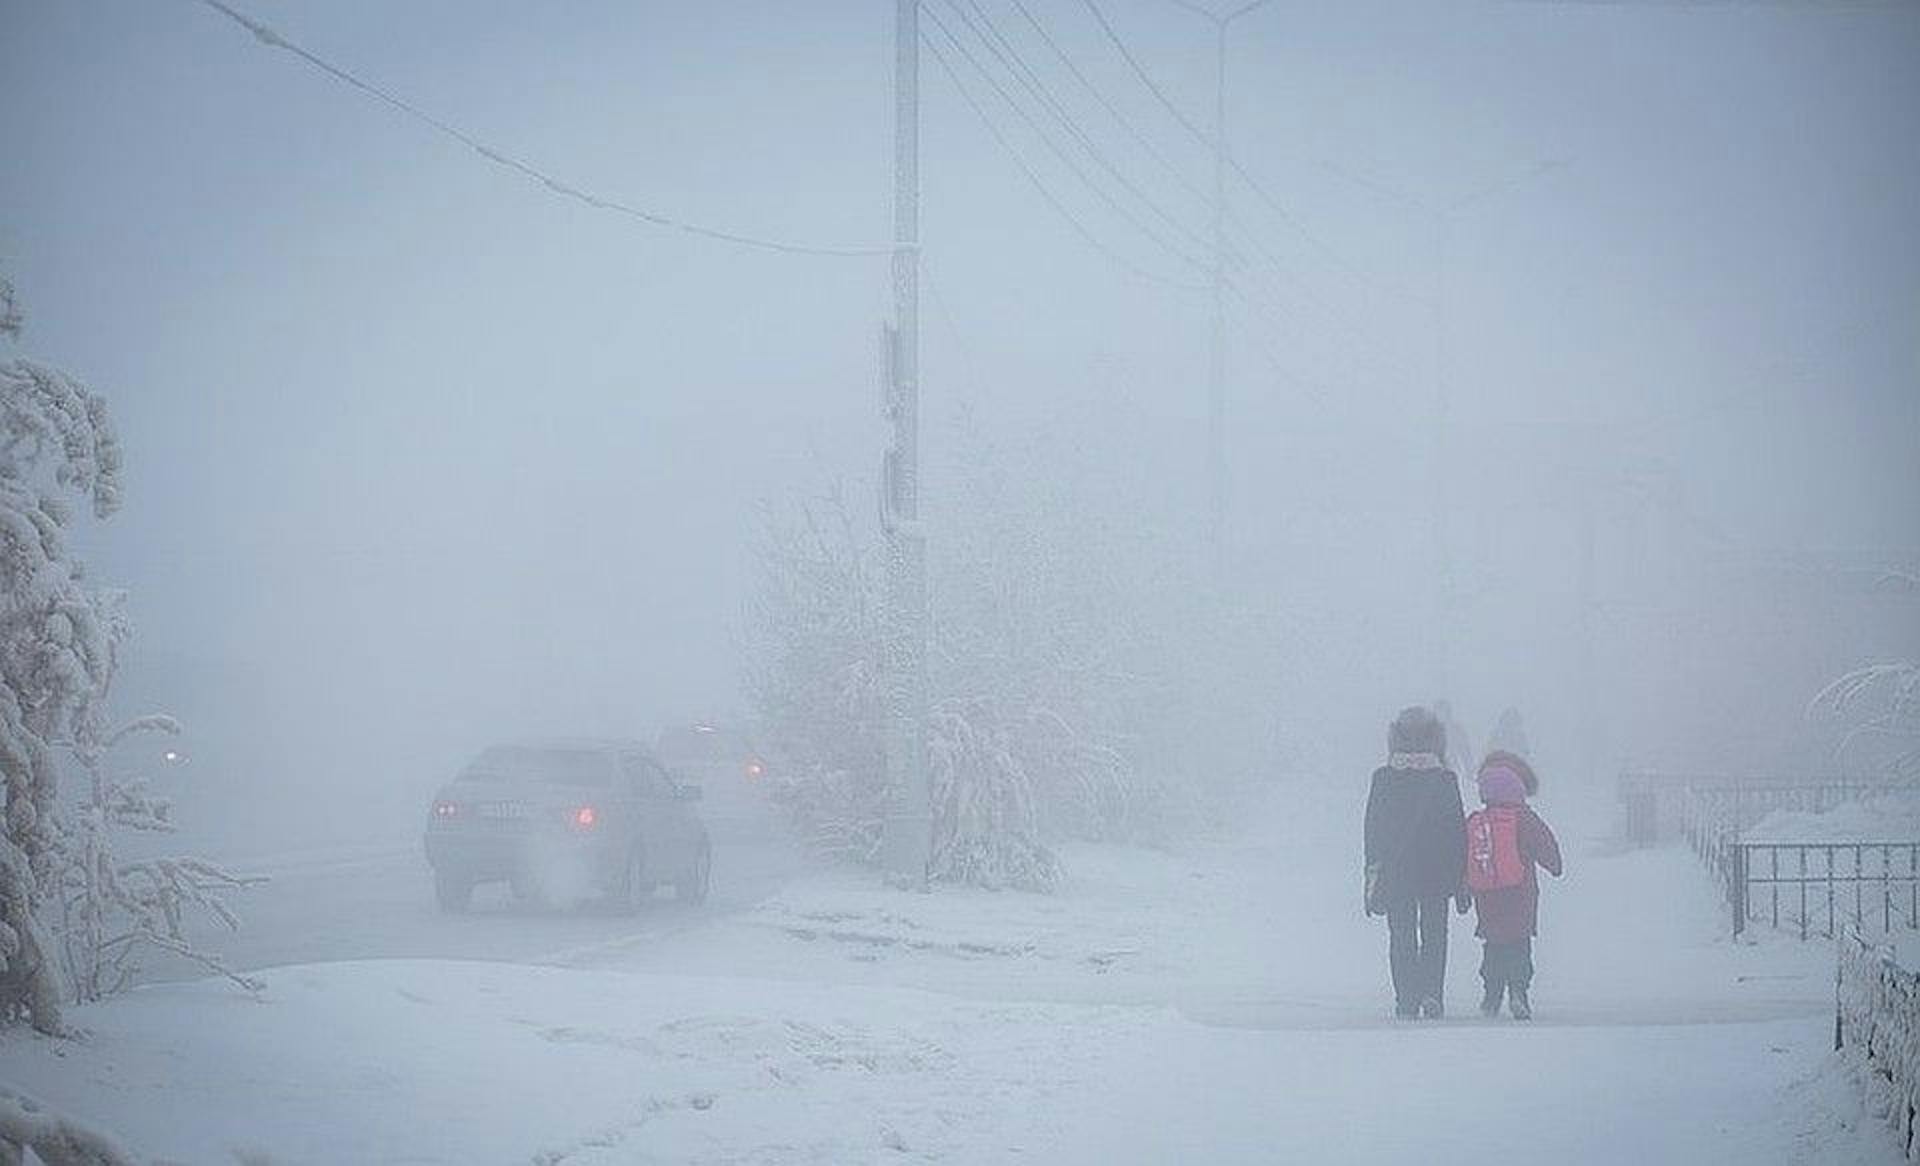 Yakutsk in winter. Photo by Maria Vasilieva, YSIA